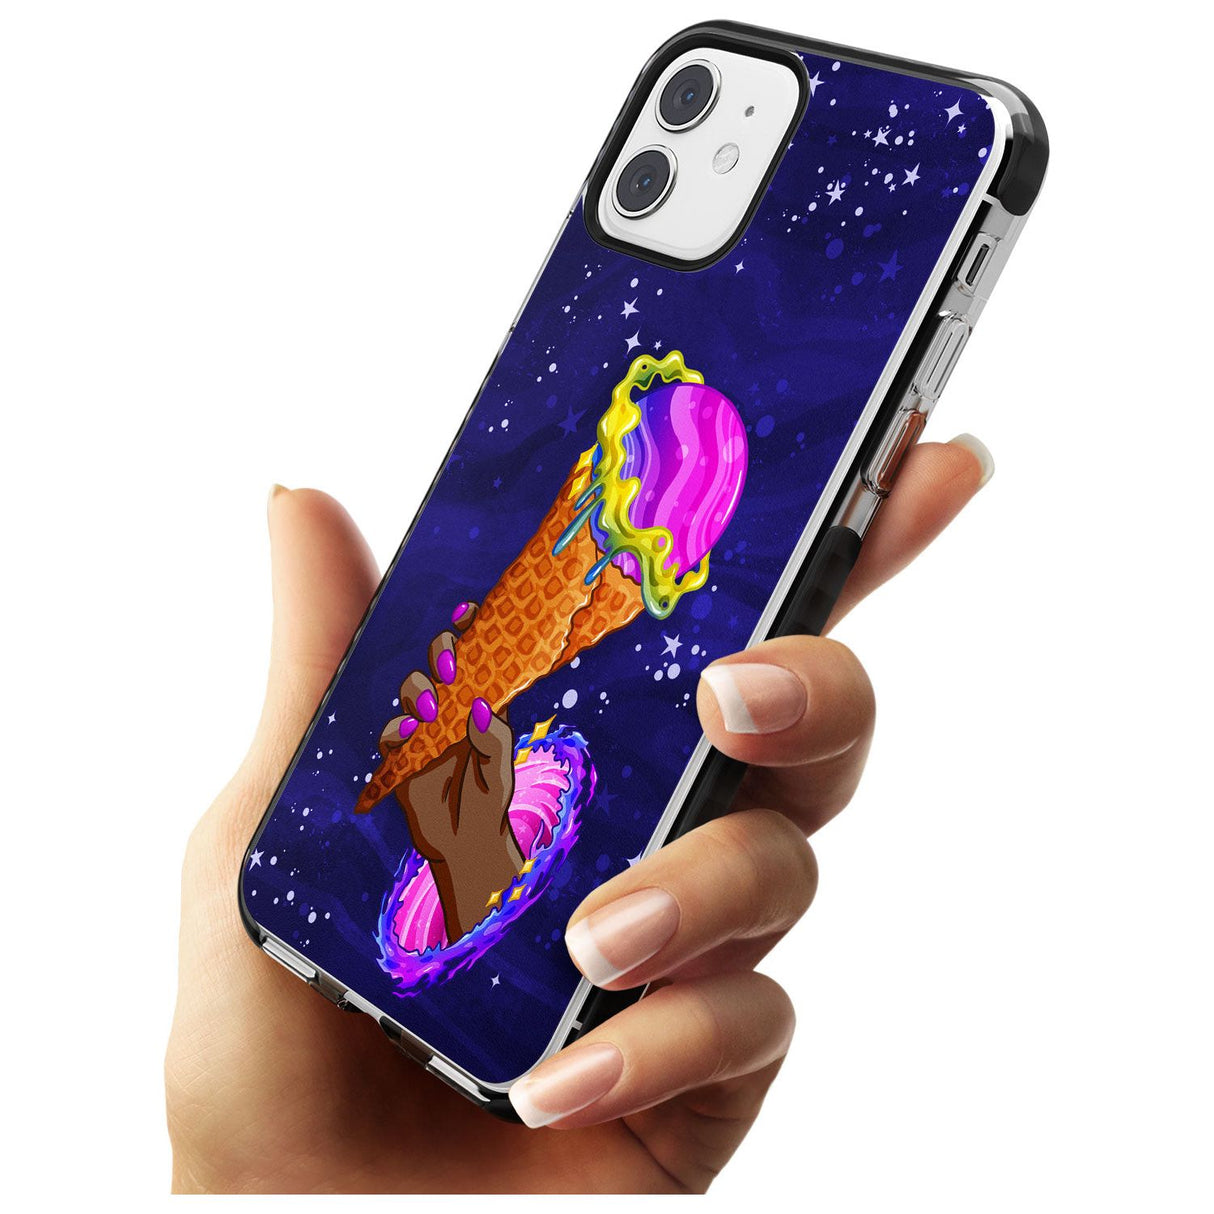 Interdimensional Ice Cream Black Impact Phone Case for iPhone 11 Pro Max